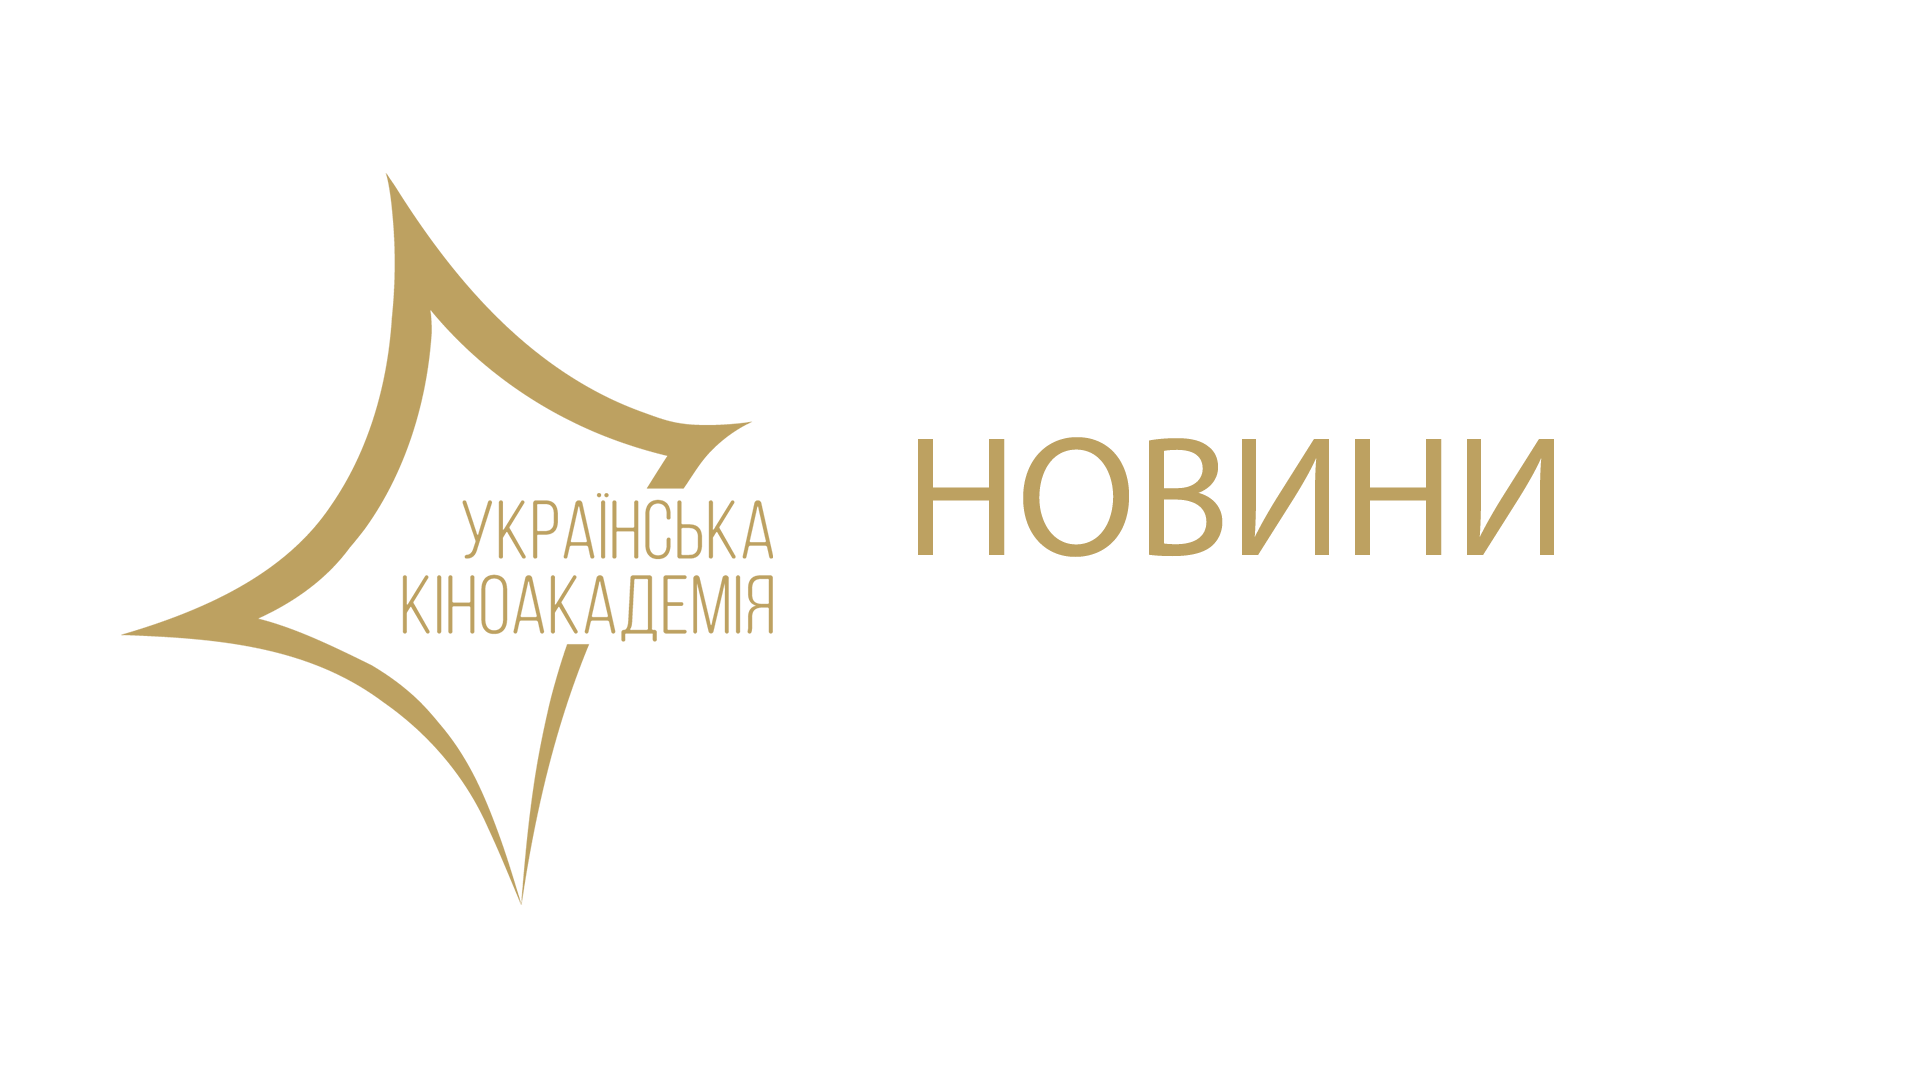 Прийом заявок на членство в Українській Кіноакадемії відкрито 20 лютого. Подати заявку на вступ можна до 19 березня (включно)